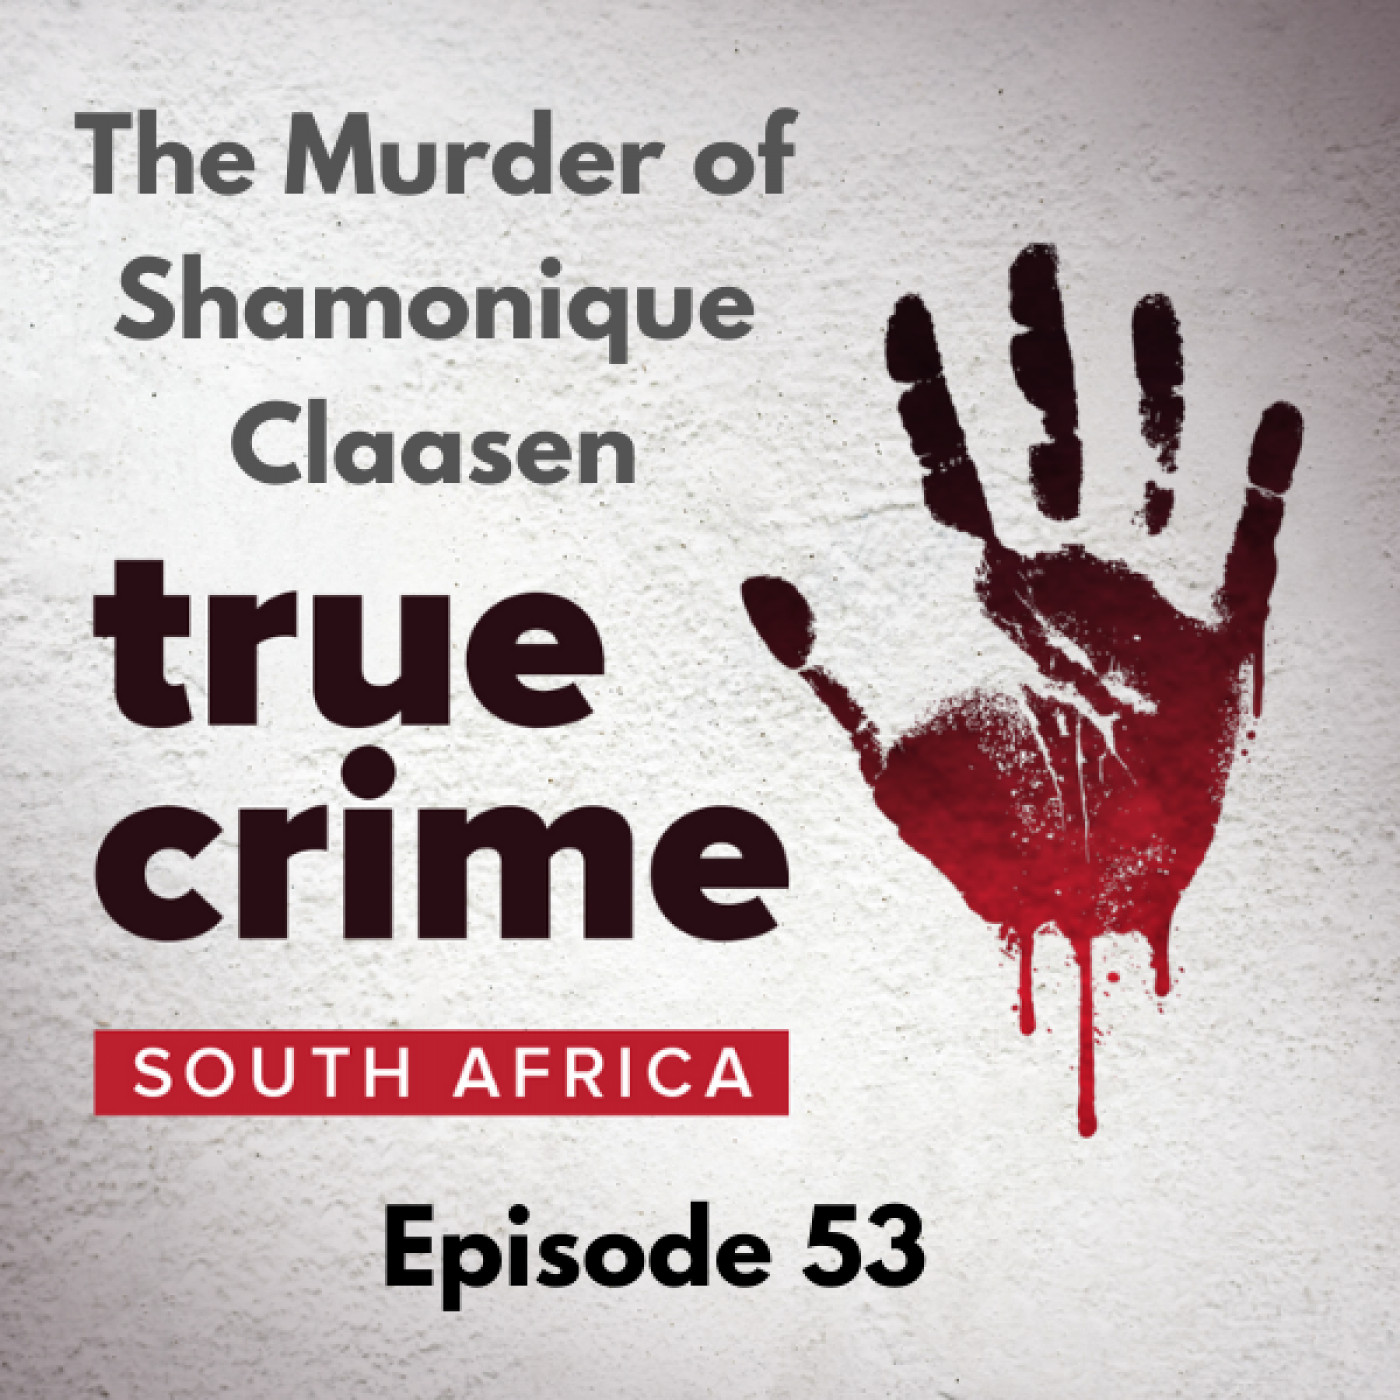 Episode 53 - The Murder of Shamonique Claasen